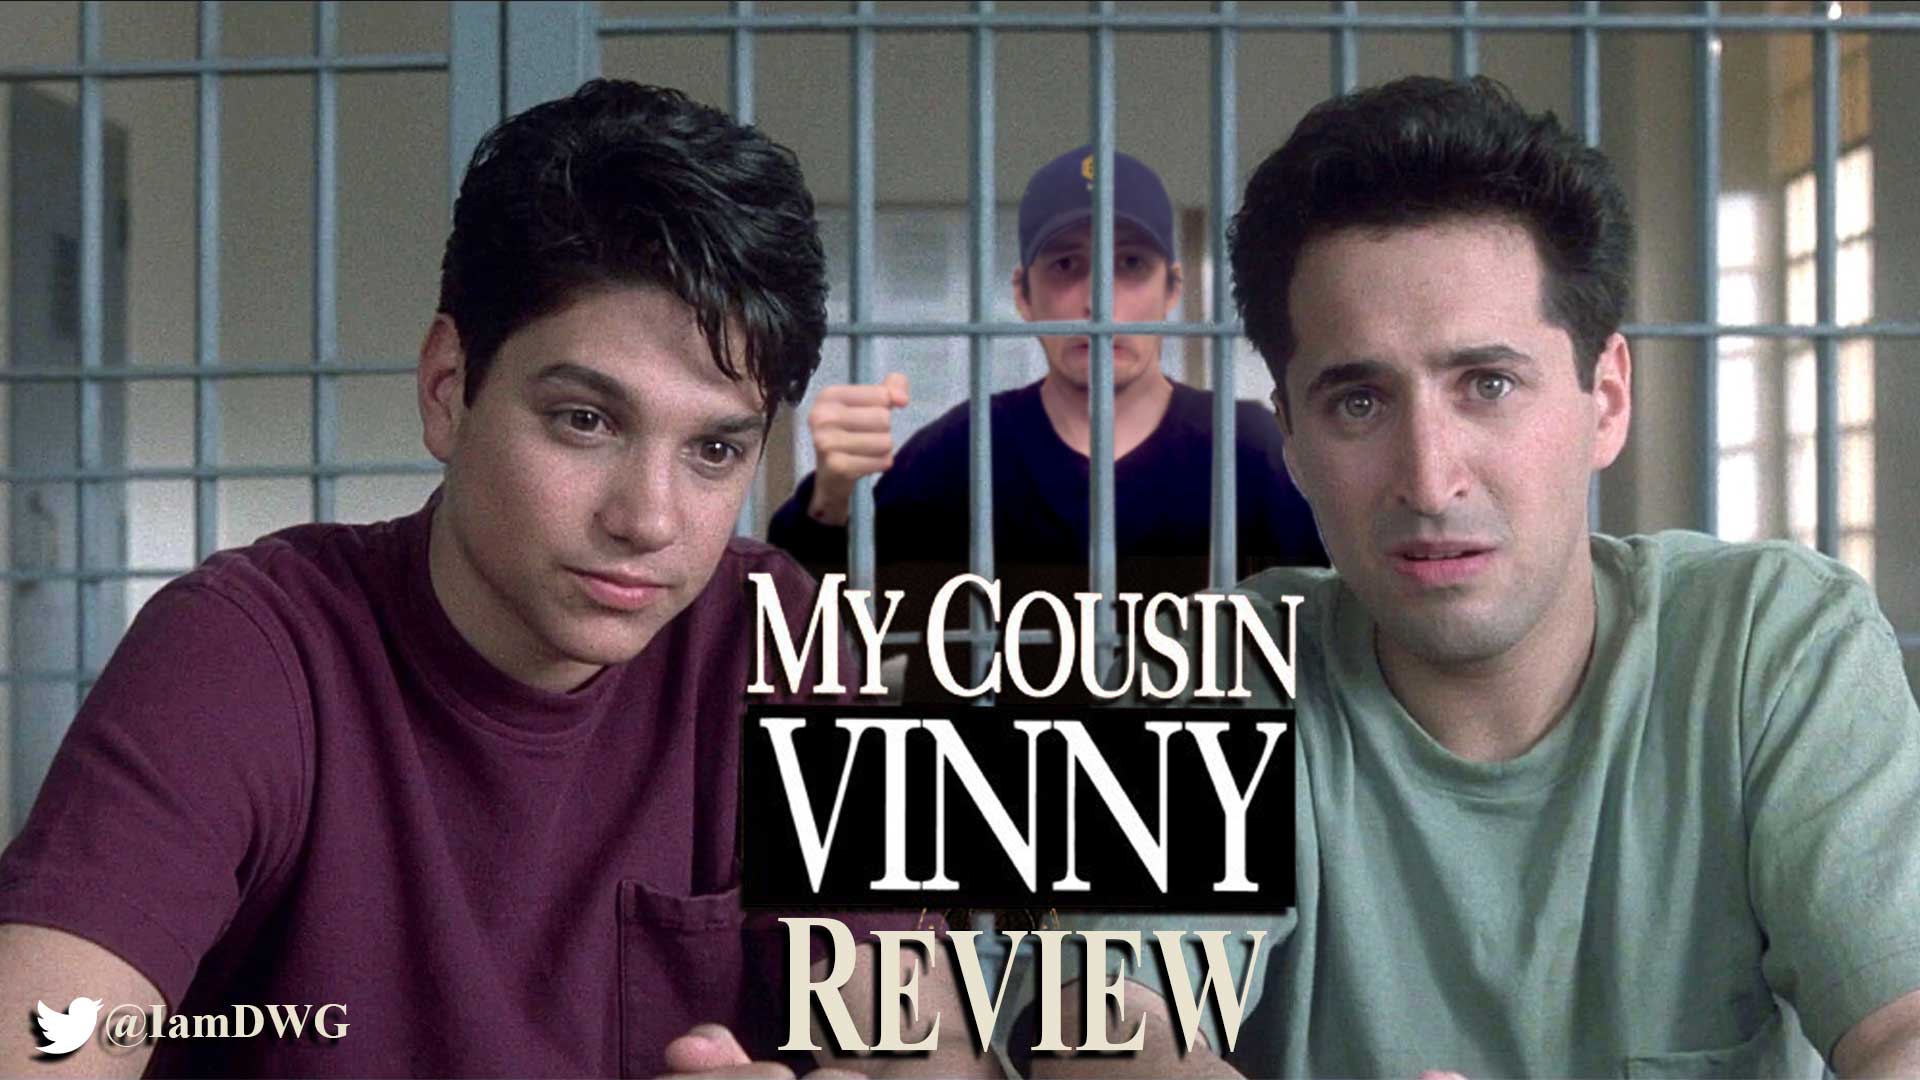 Bada bing, bada boom, 'My Cousin Vinny' review